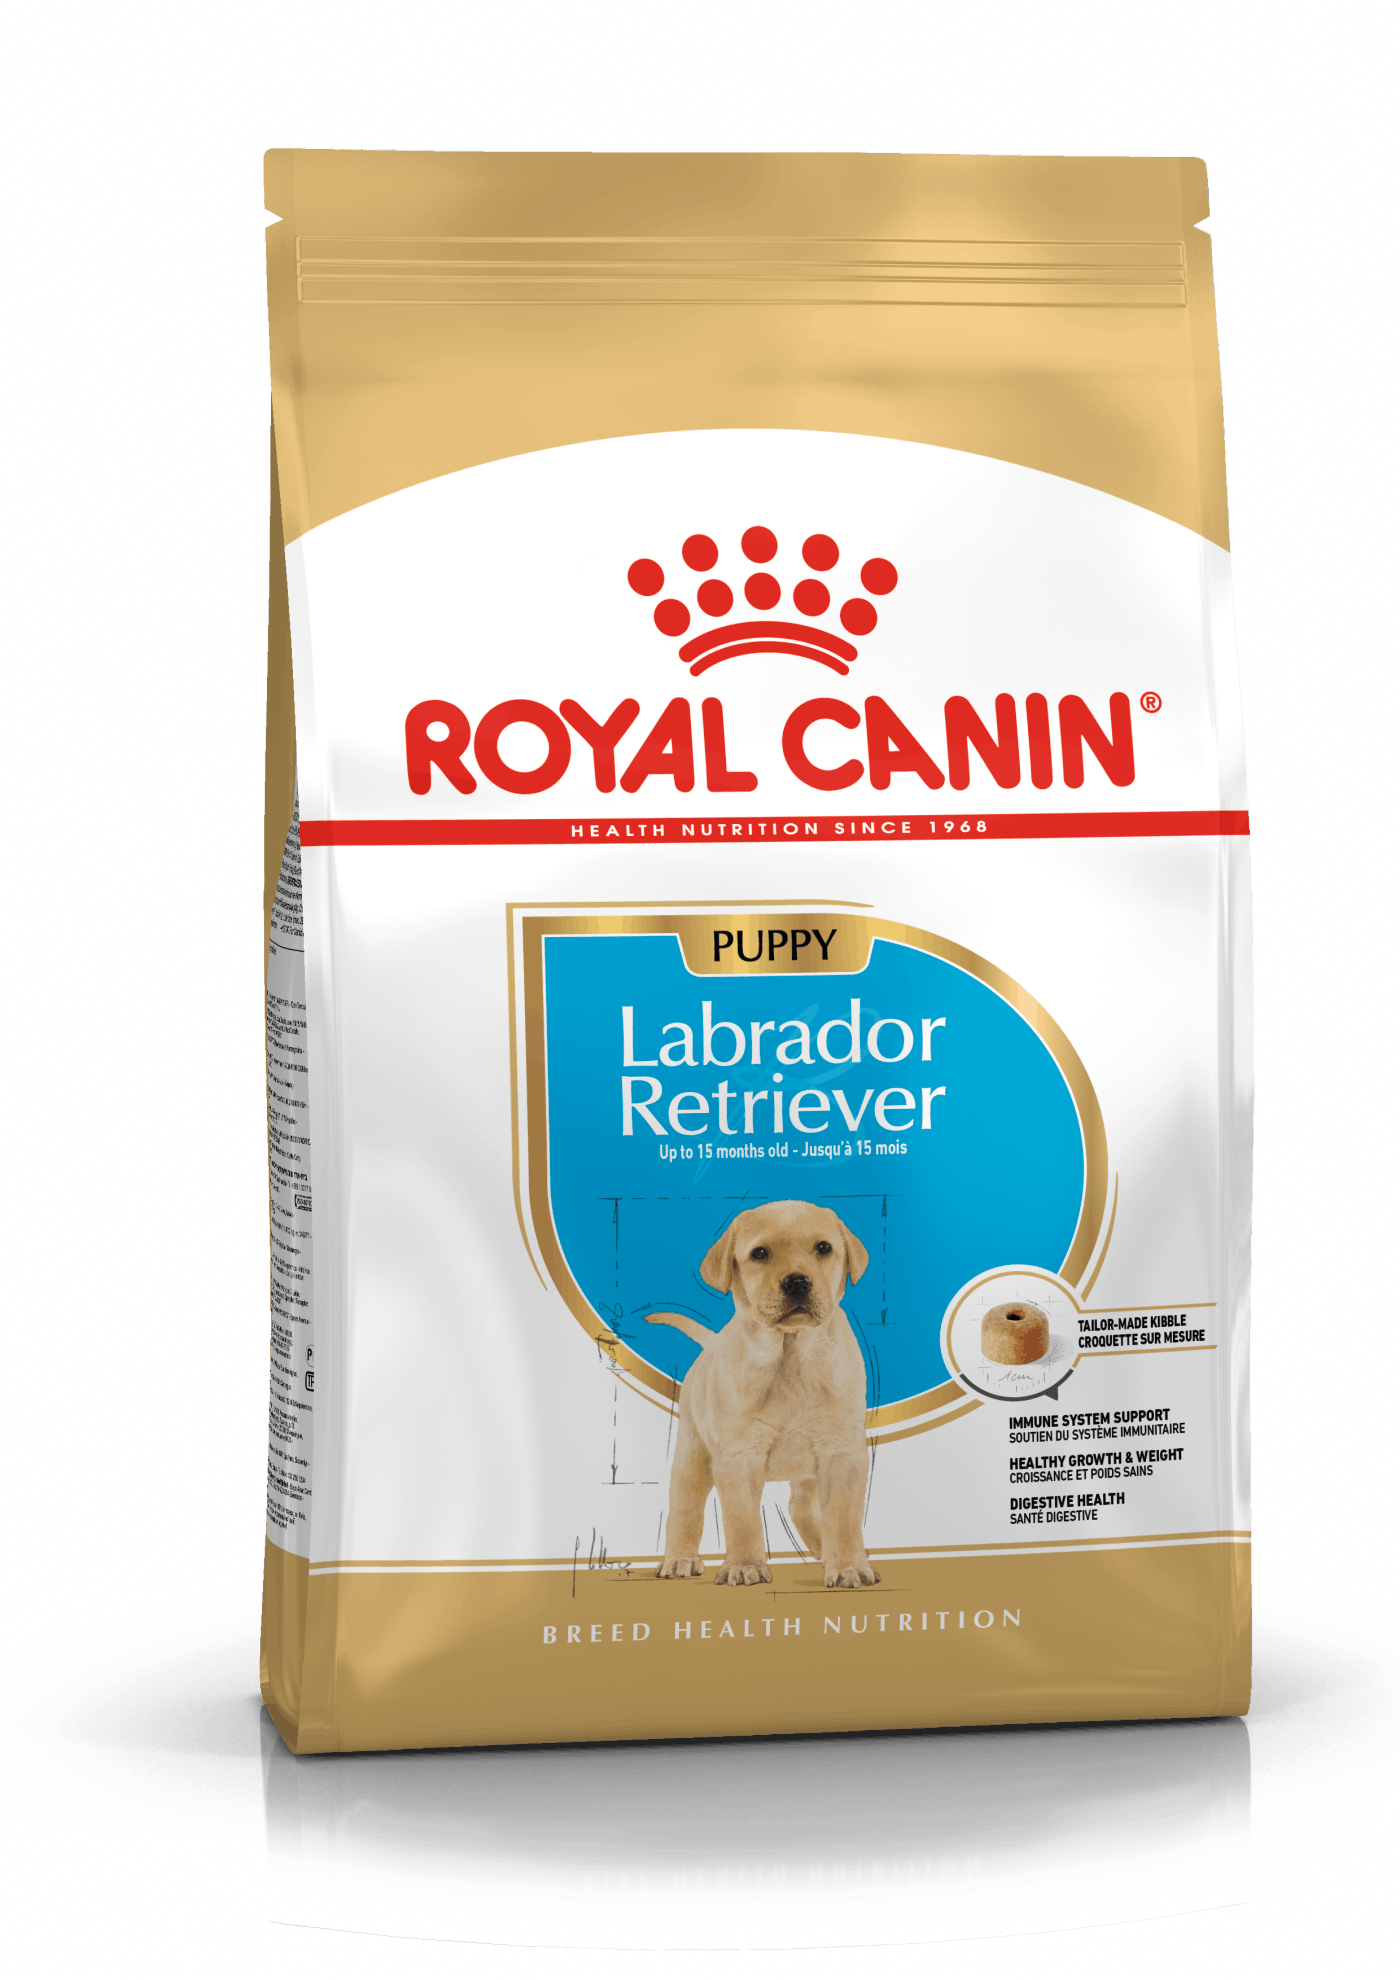 Royal Canin Labrador Retriever Puppy - op til 15 måneder. 12kg